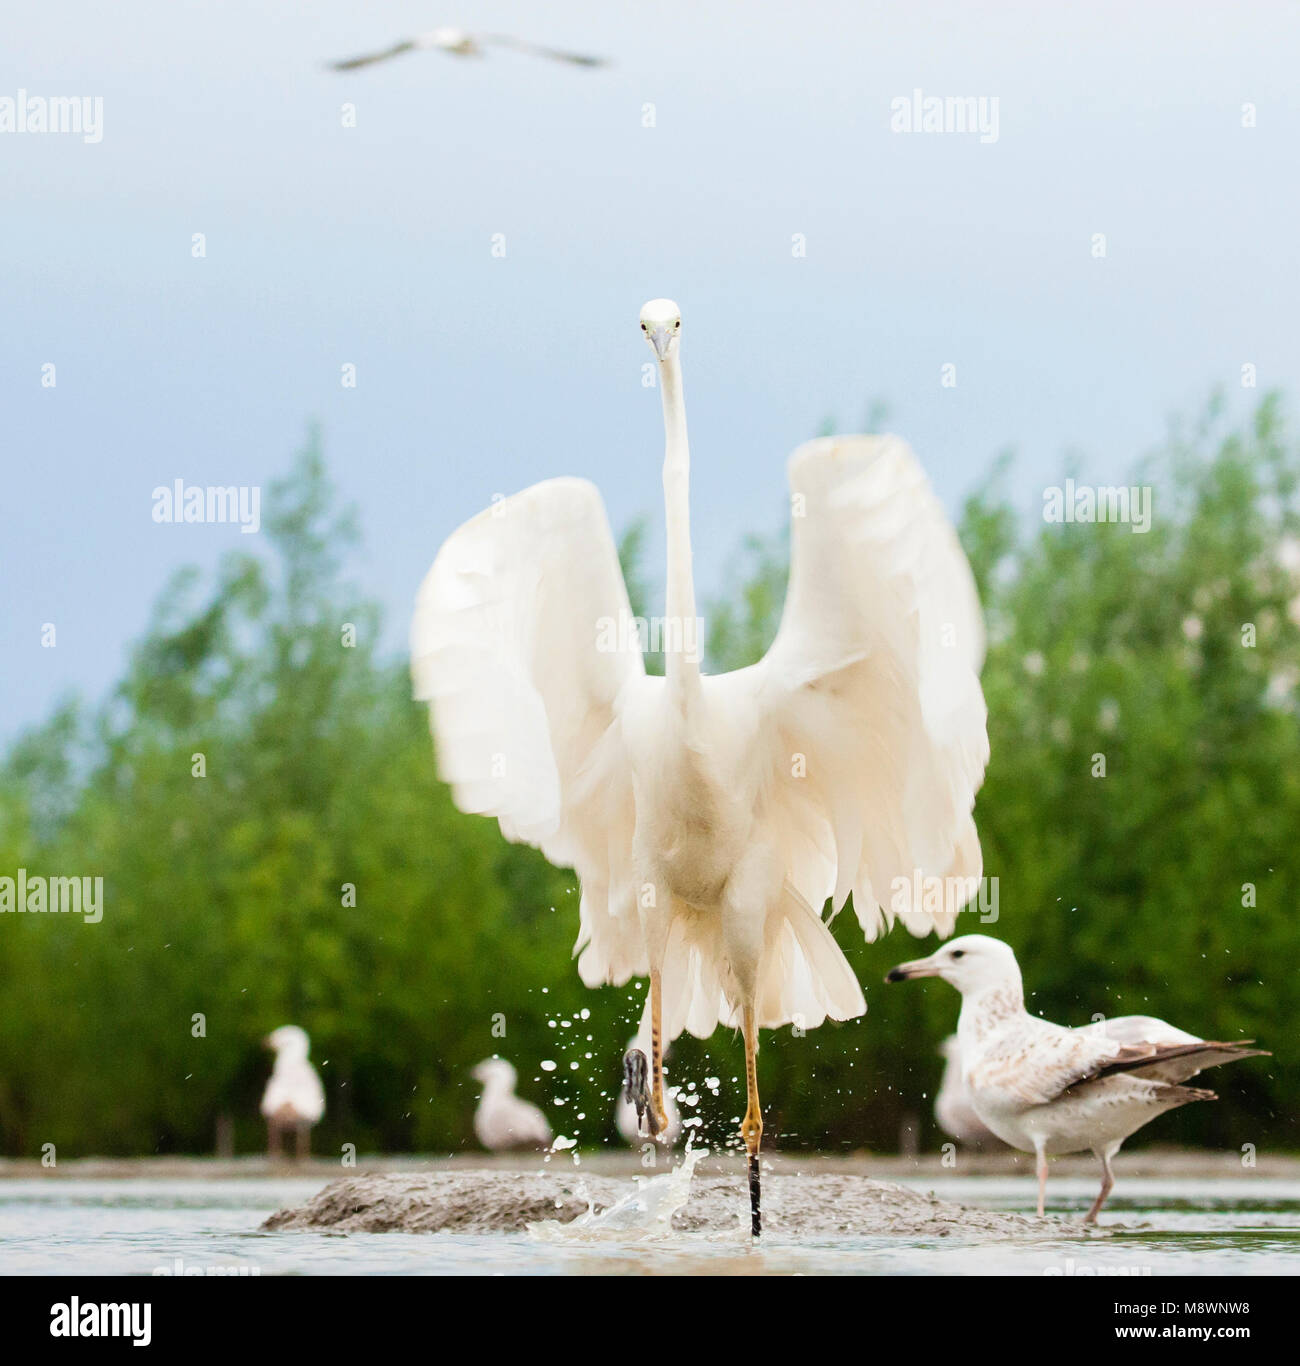 Grote Zilverreiger rennend in Wasser met gespreide vleugels; Western Great Egret in Wasser mit ausgebreiteten Flügeln Stockfoto